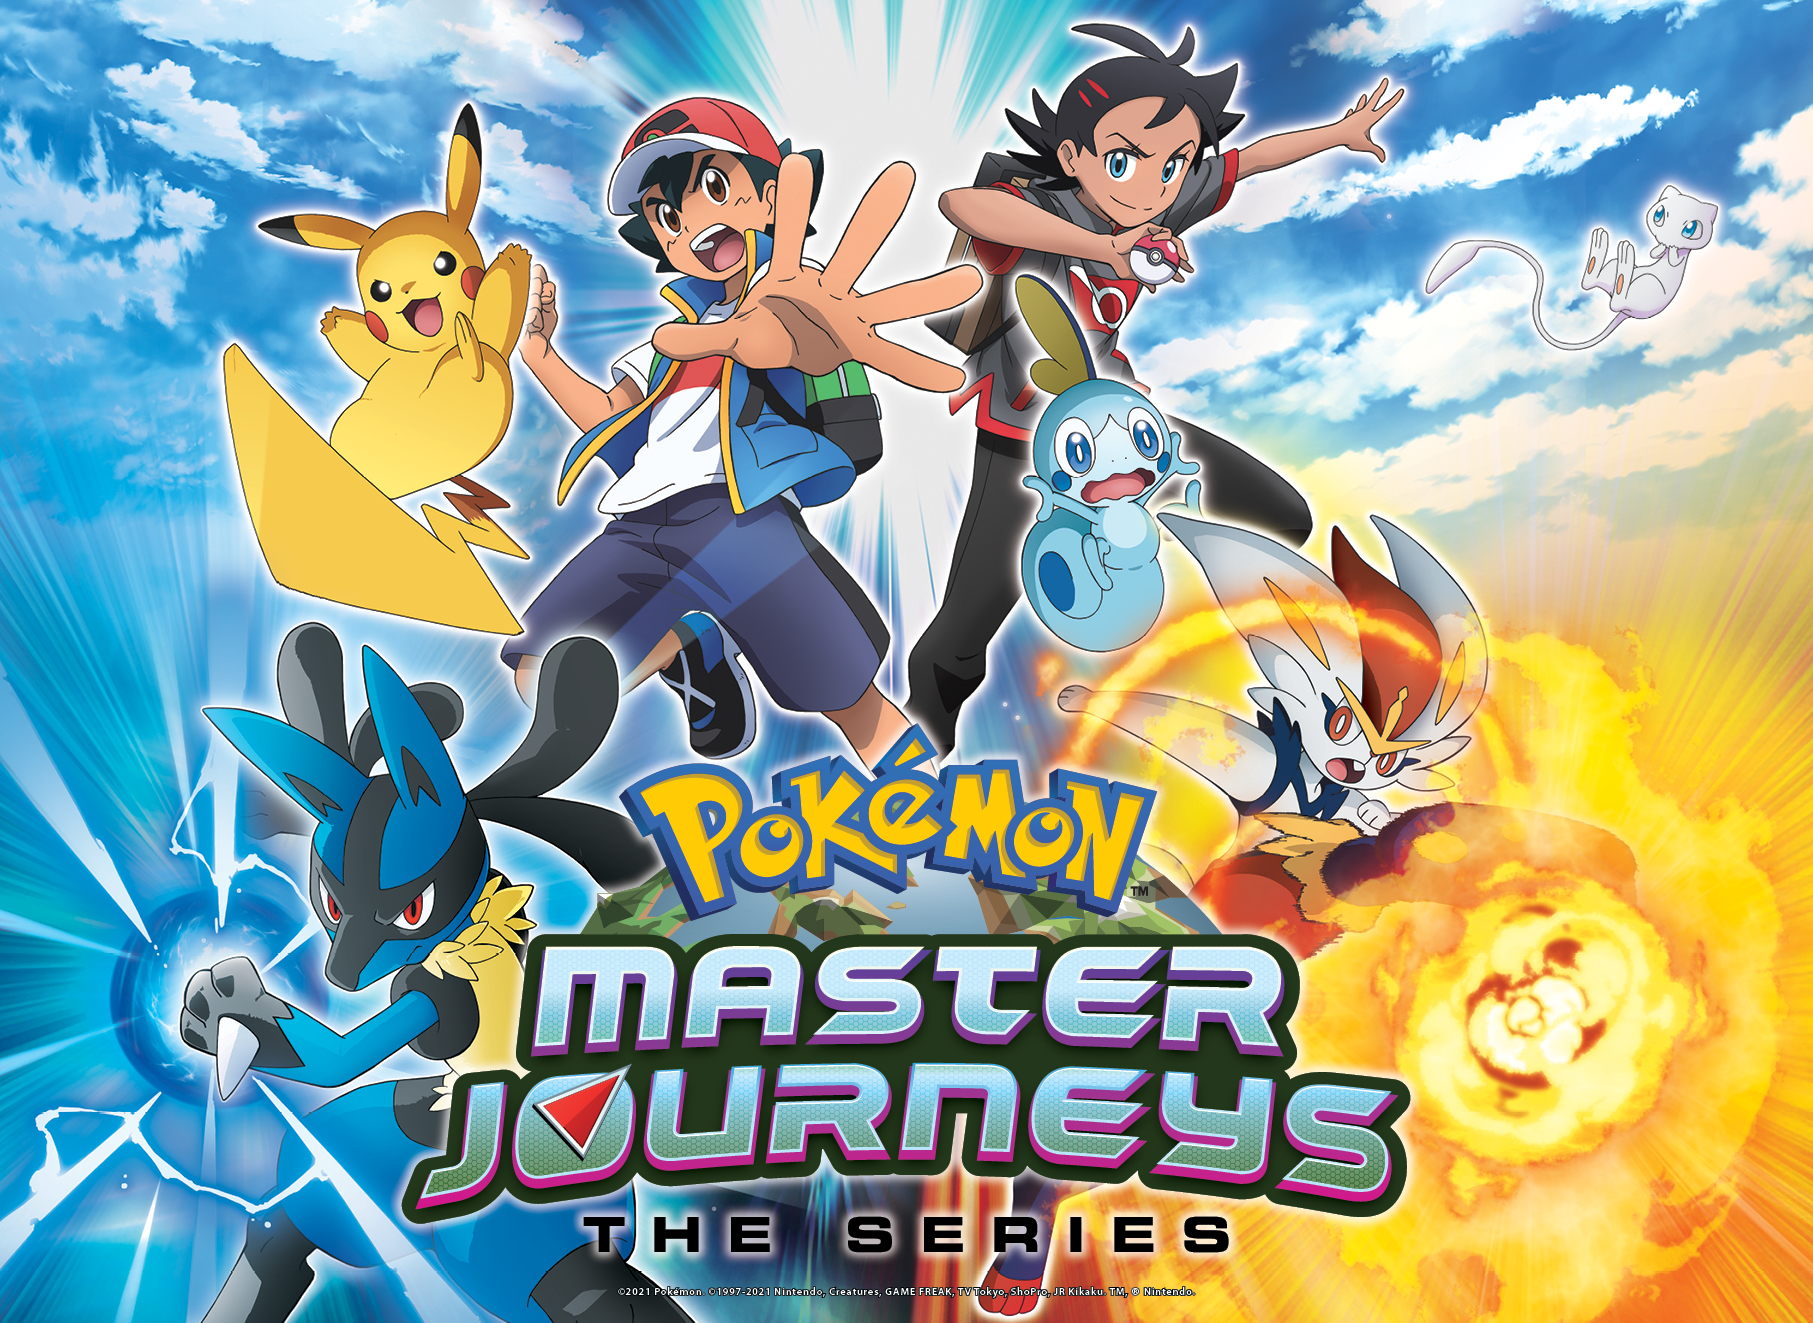 Pokemon_Master_Journeys_The_Series_-_Key_Art.jpg